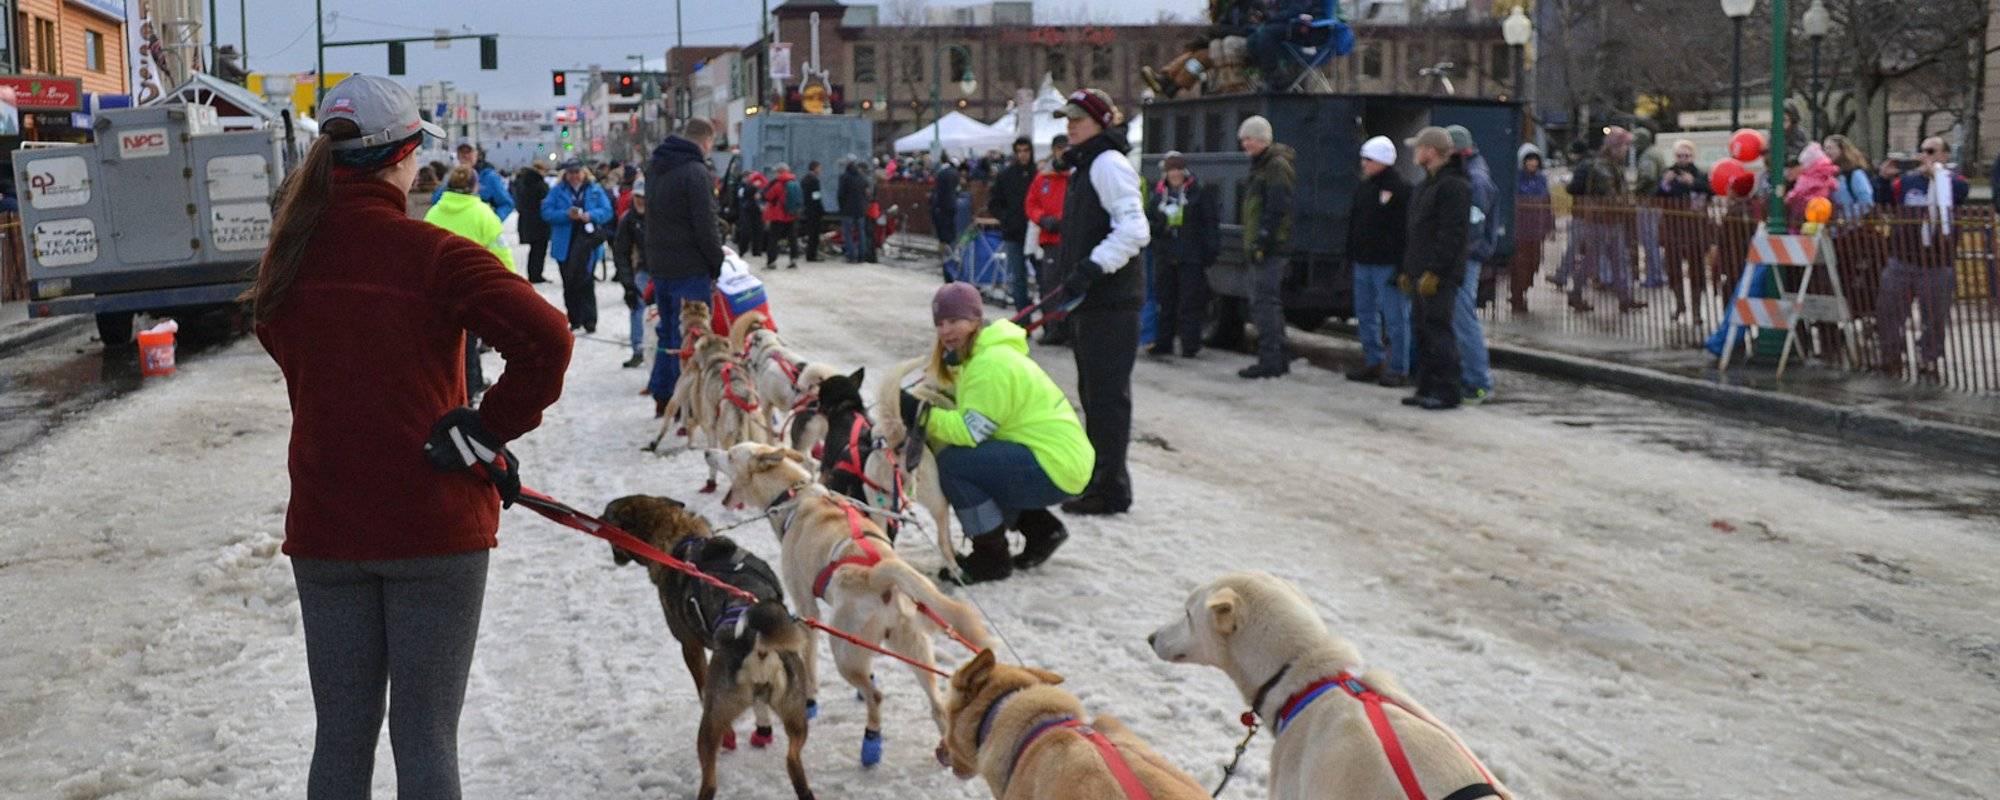 IDITAROD Trail Sled Dog Race // IDITAROD największy wyścig psich zaprzęgów